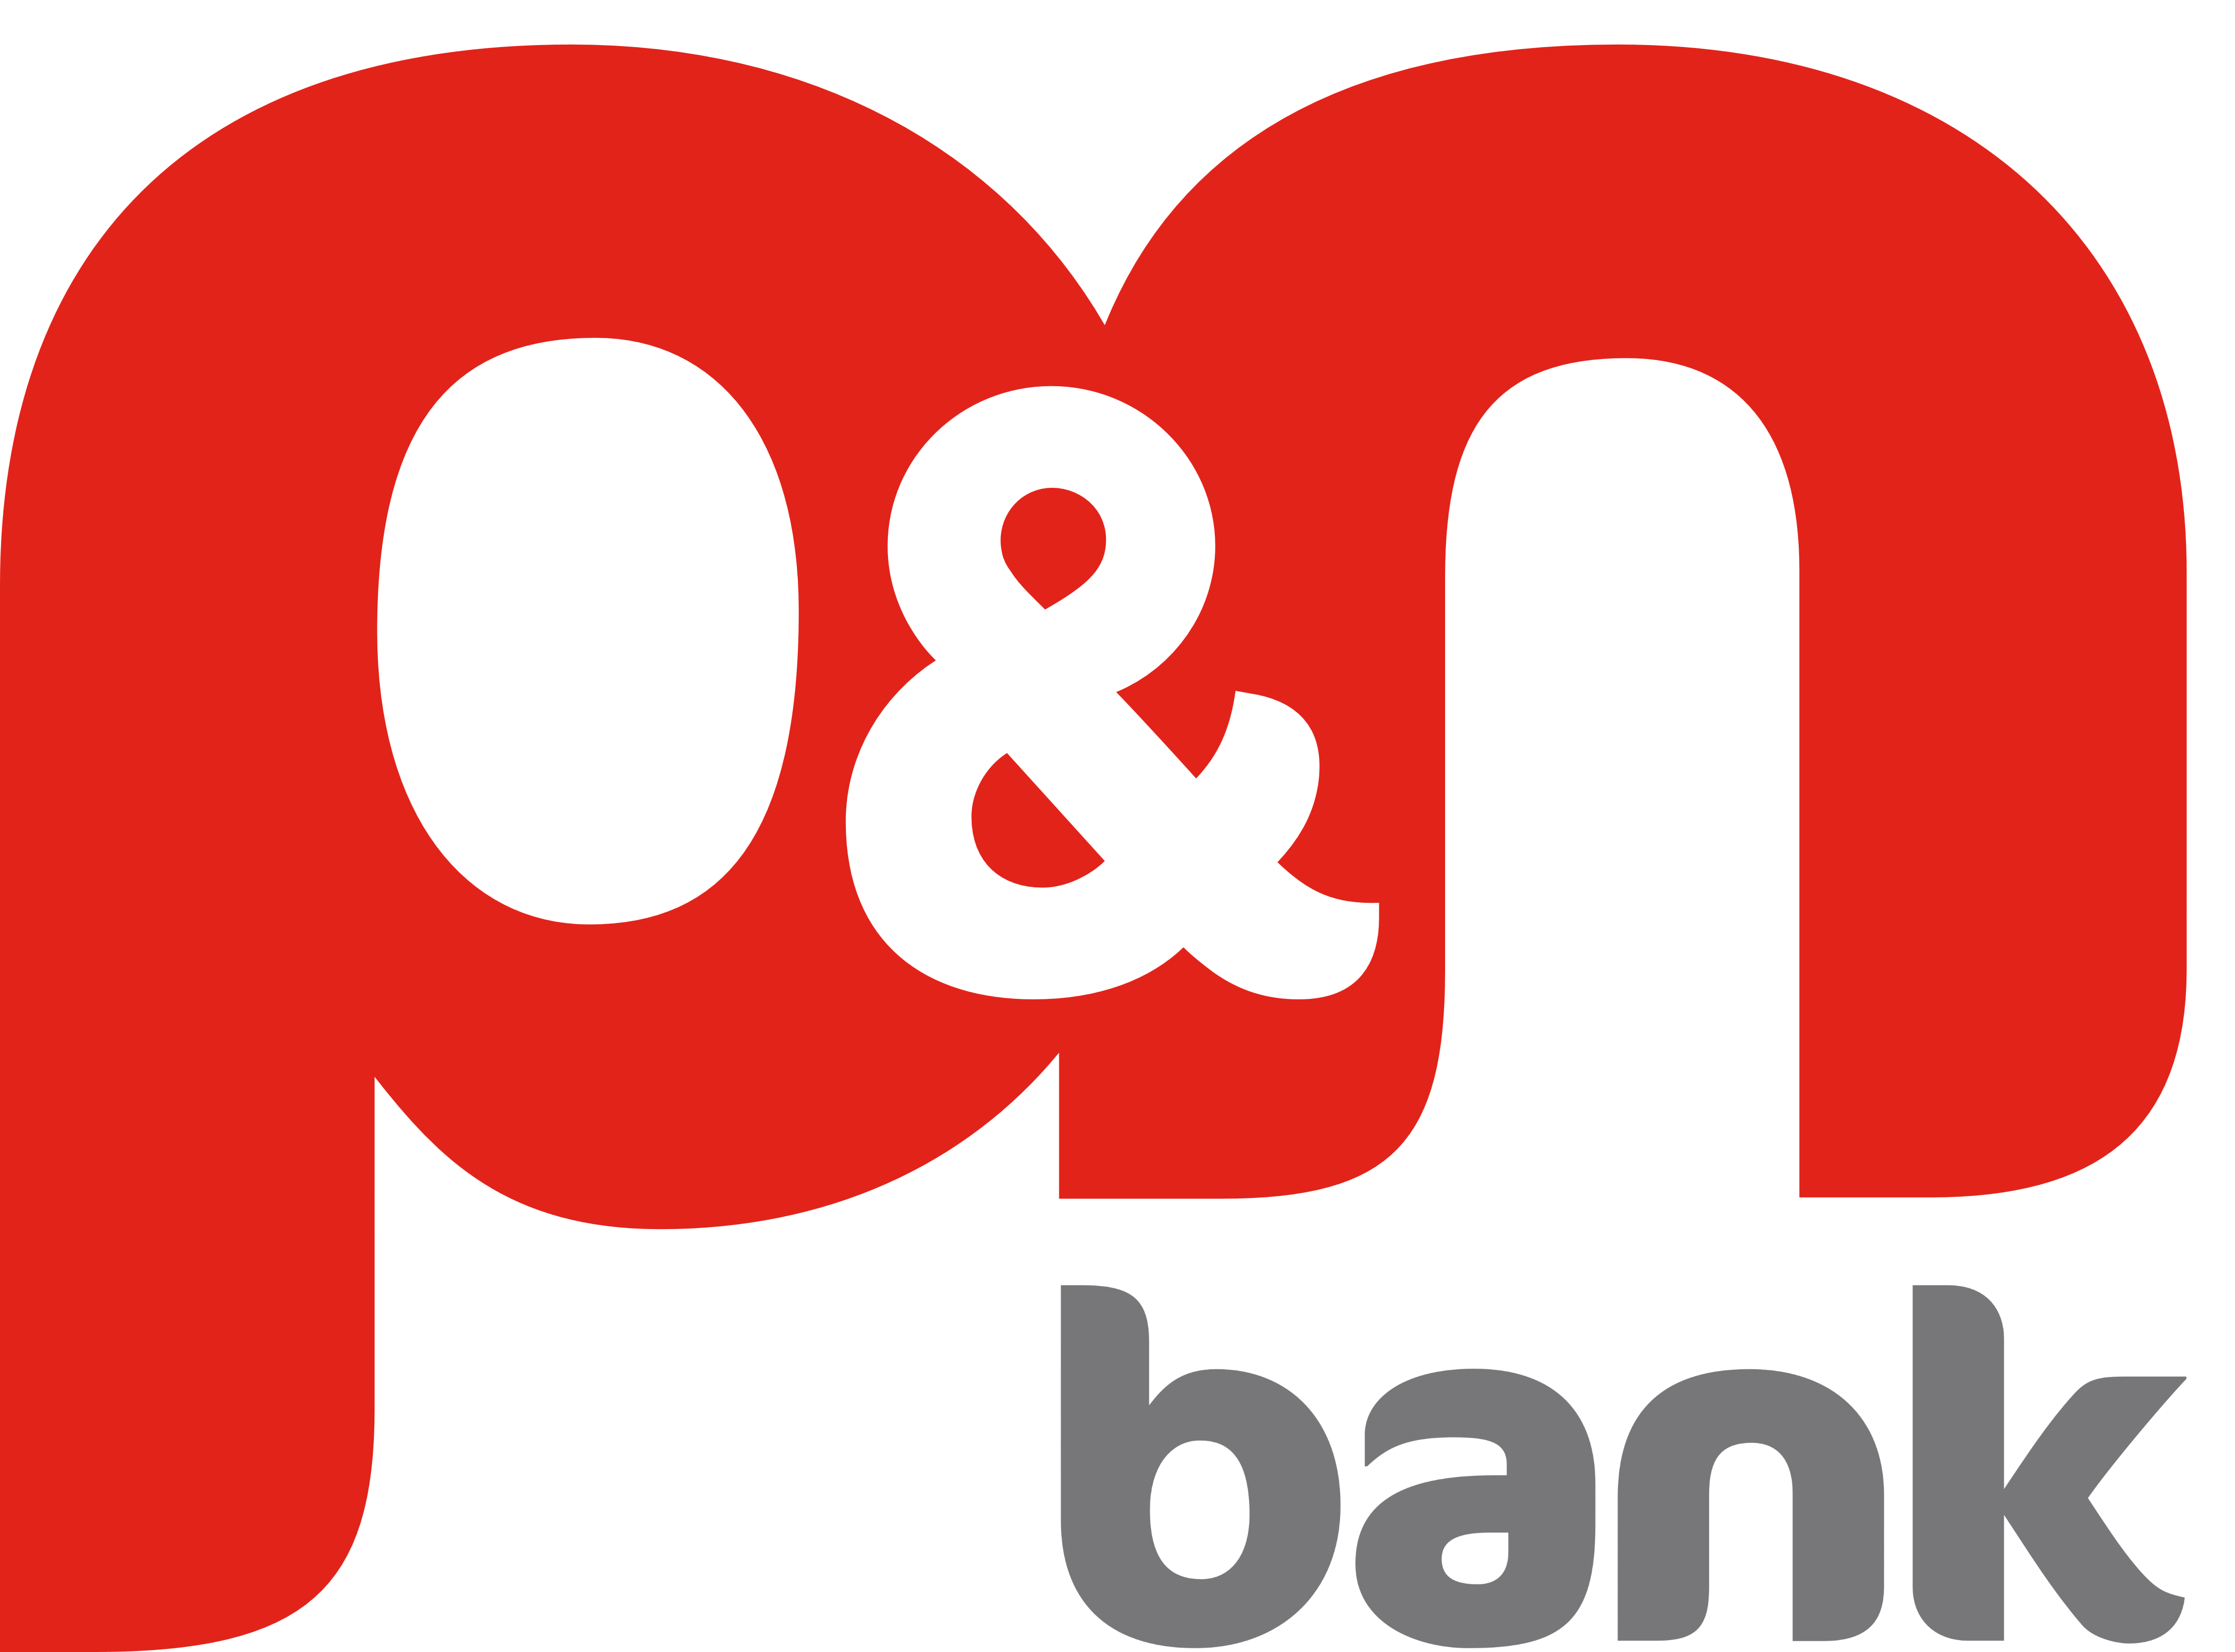 bank clipart bank logo